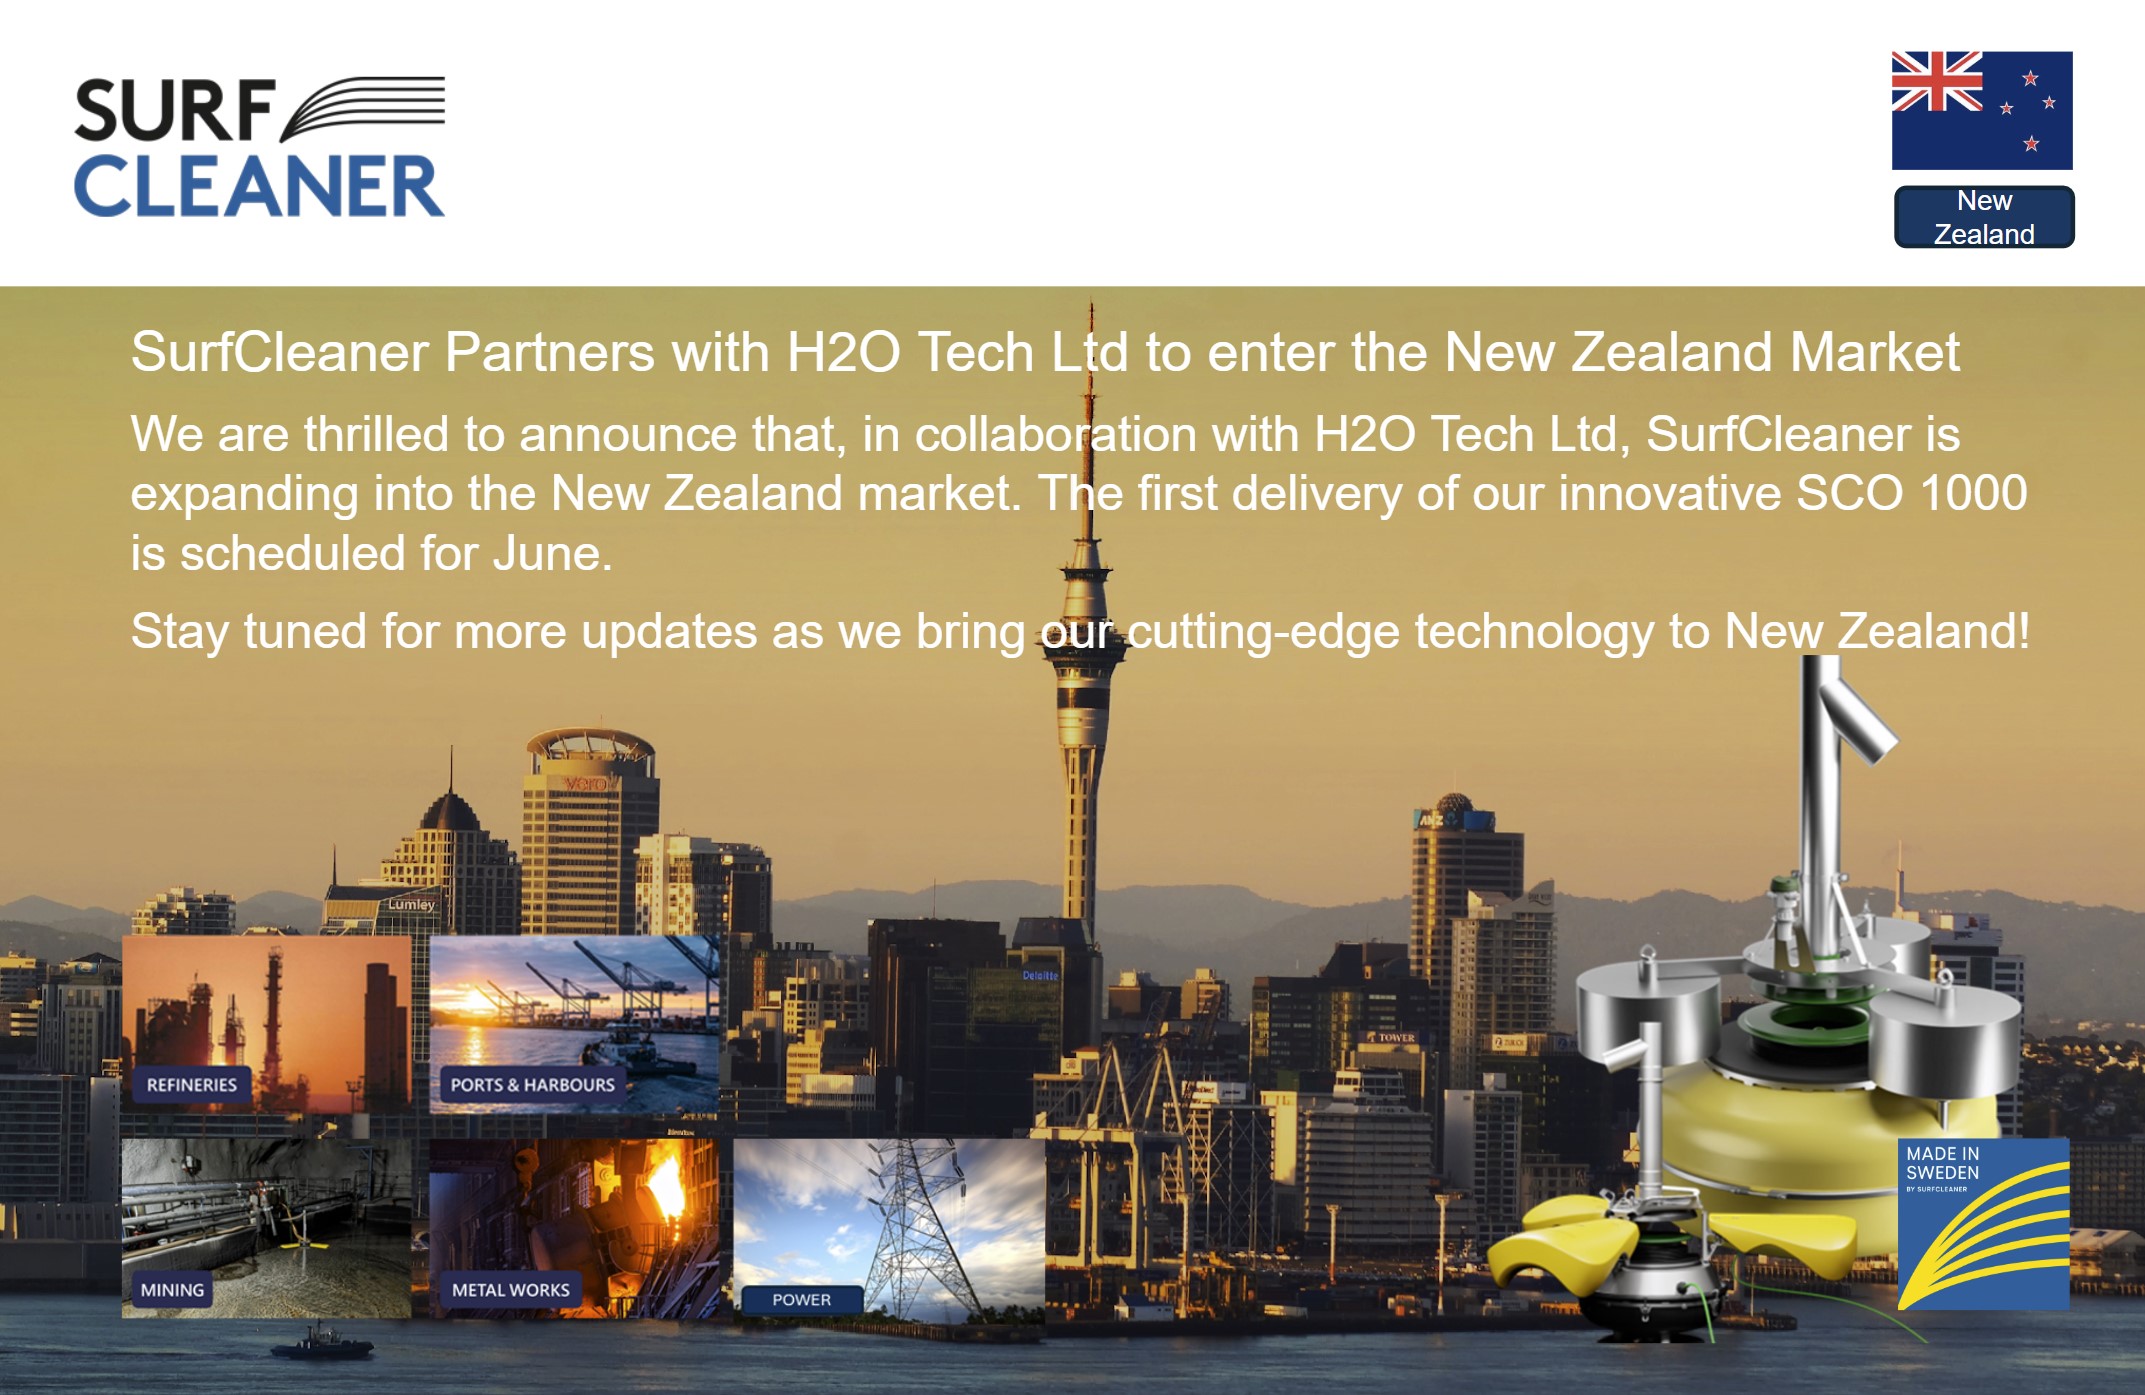 SurfCleaner distributor H20 Tech LTD will reach New Zealand market